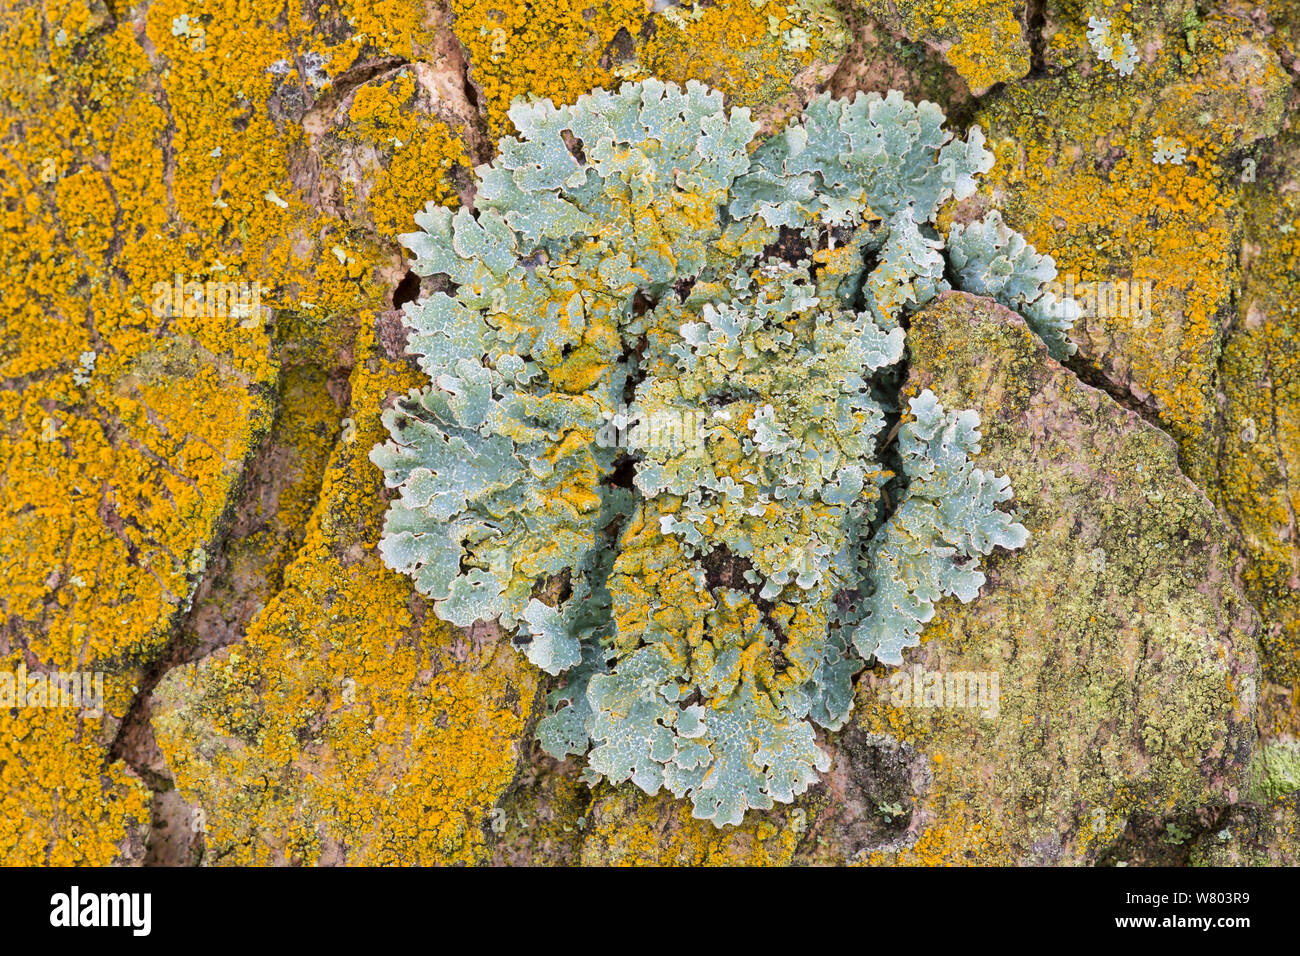 Polvo de Oro (liquen Chrysothrix candelaris) creciendo alrededor y por encima de la protección (liquen Parmelia sulcata) en Sycamore corteza, Padley Woods, Derbyshire, Inglaterra, Reino Unido, diciembre. Foto de stock